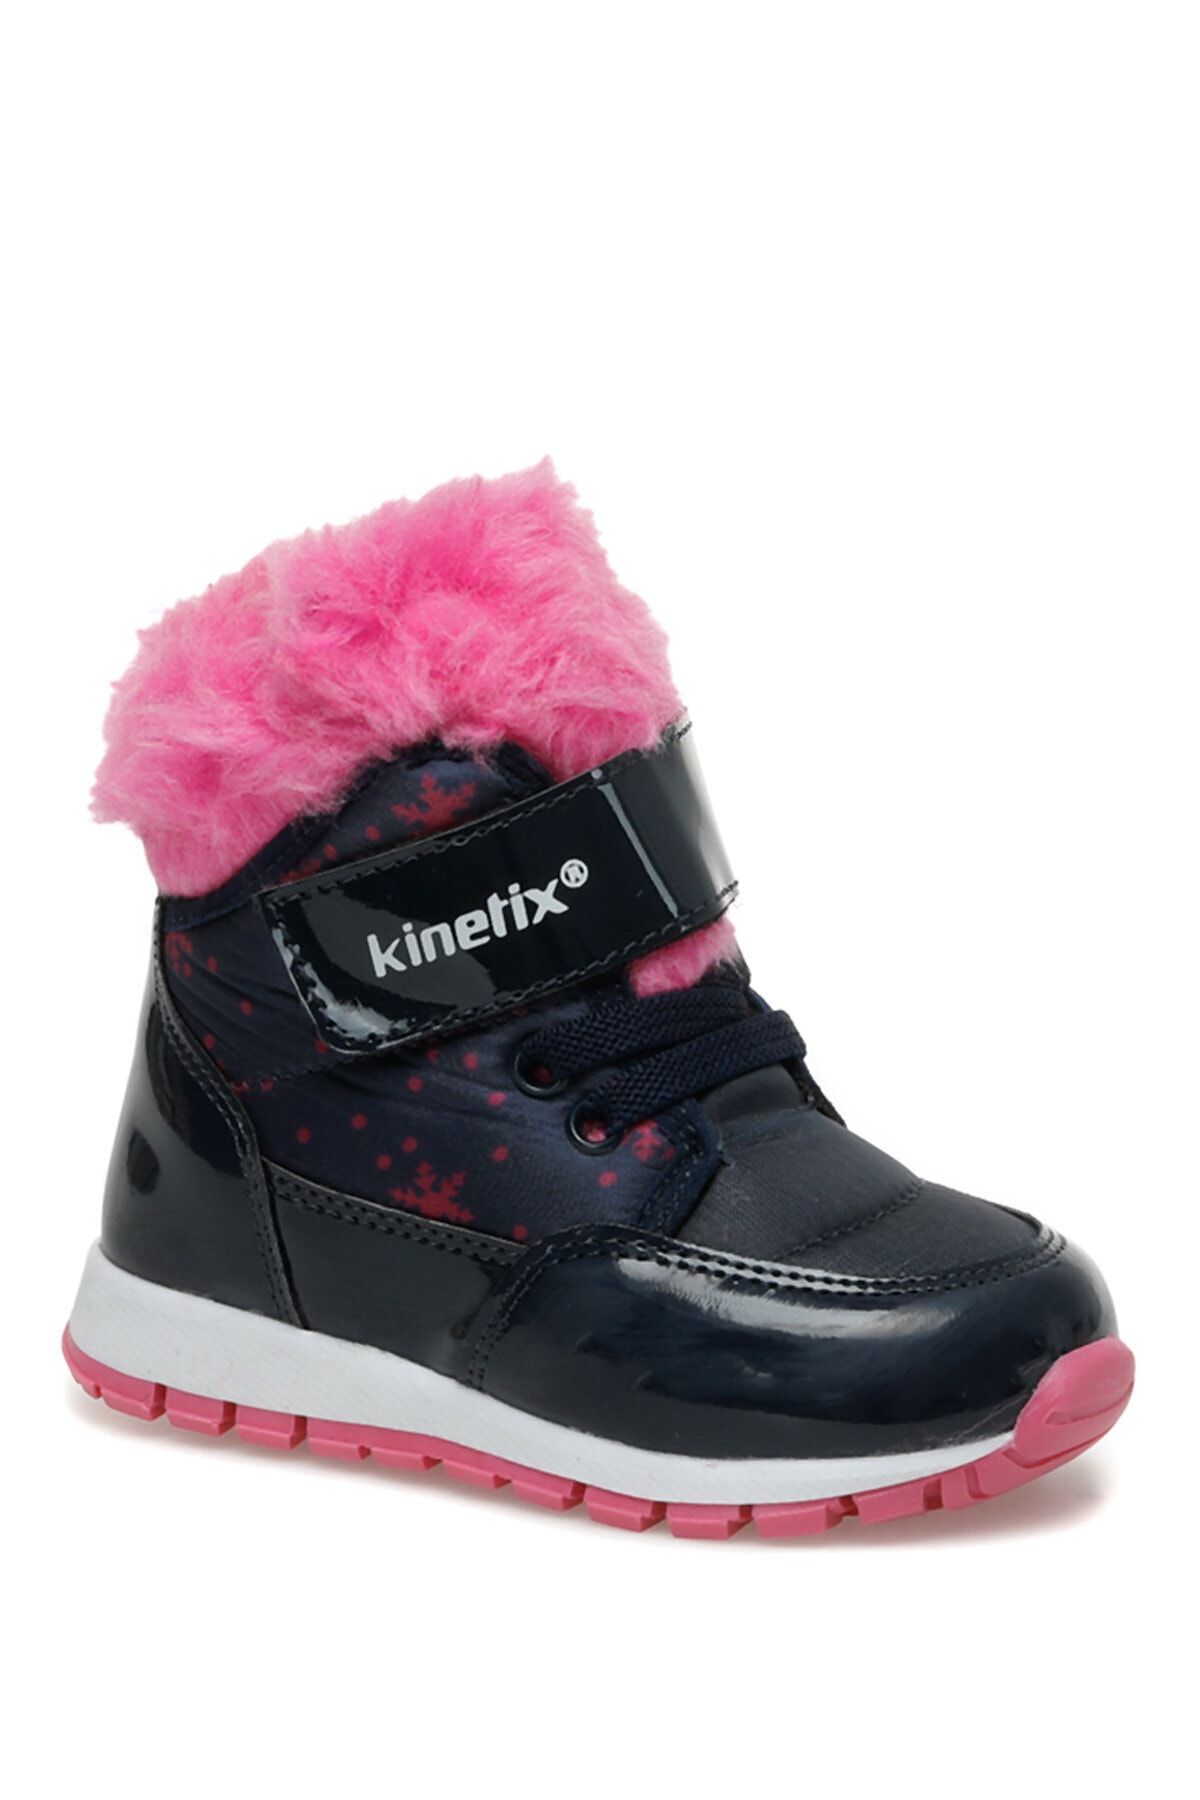 Kinetix Mula 2pr Lacivert Kız Çocuk Spor Ayakkabı